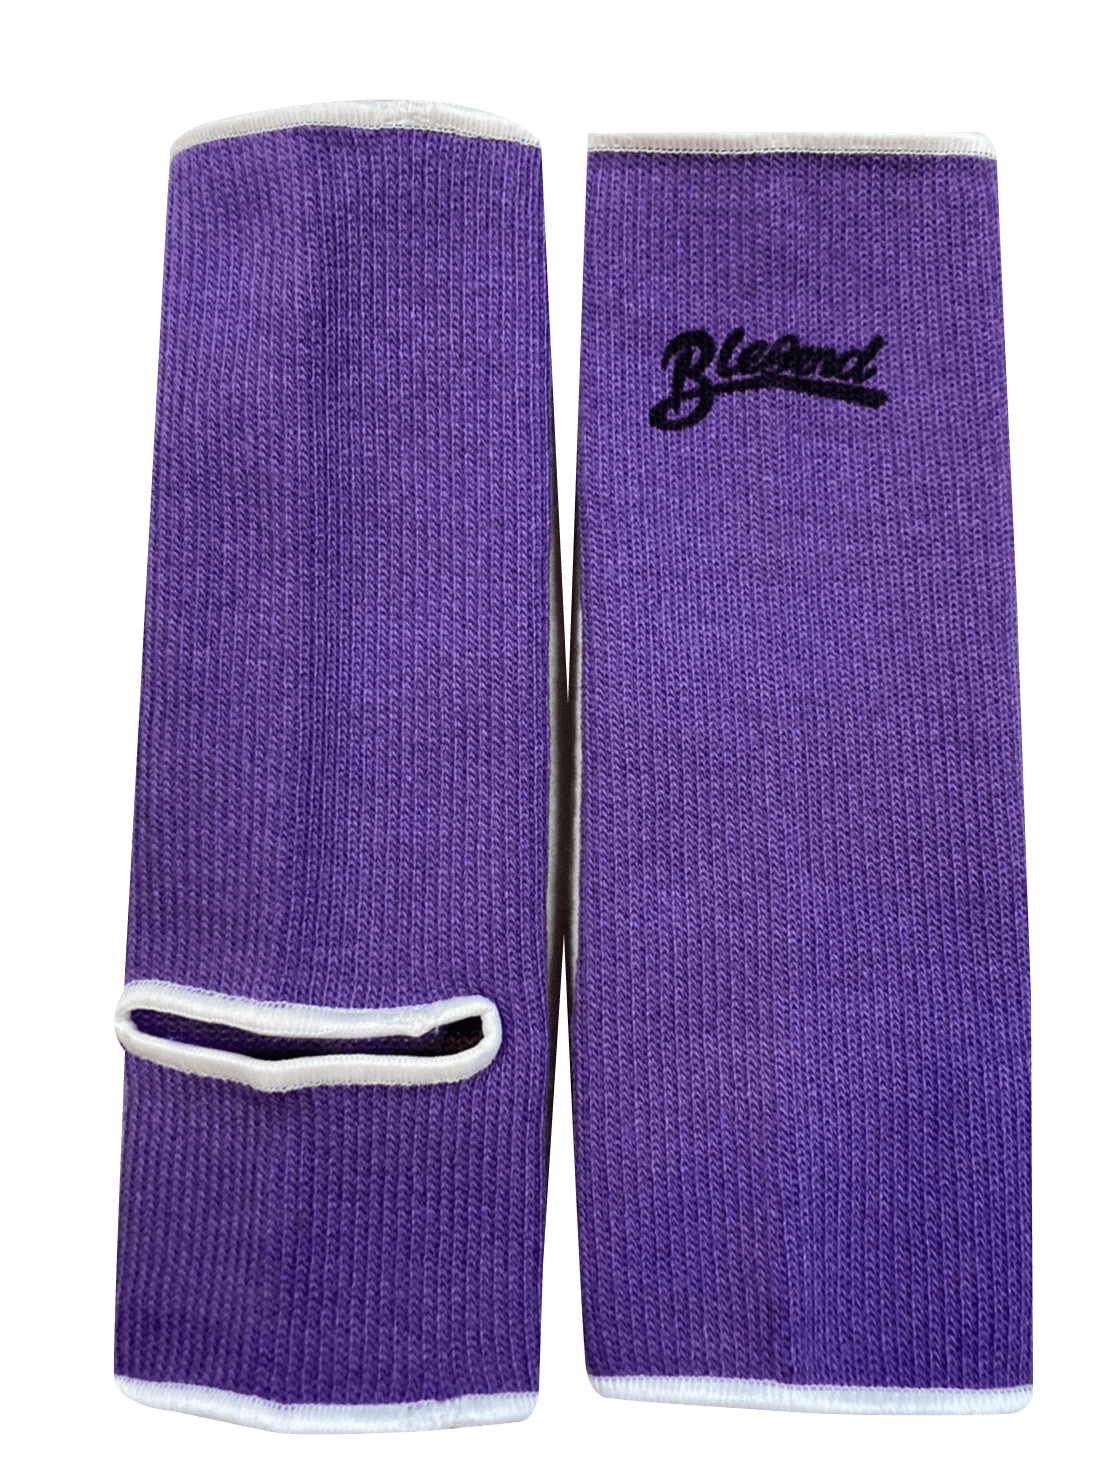 BLEGEND Ankleguards Purple Blegend